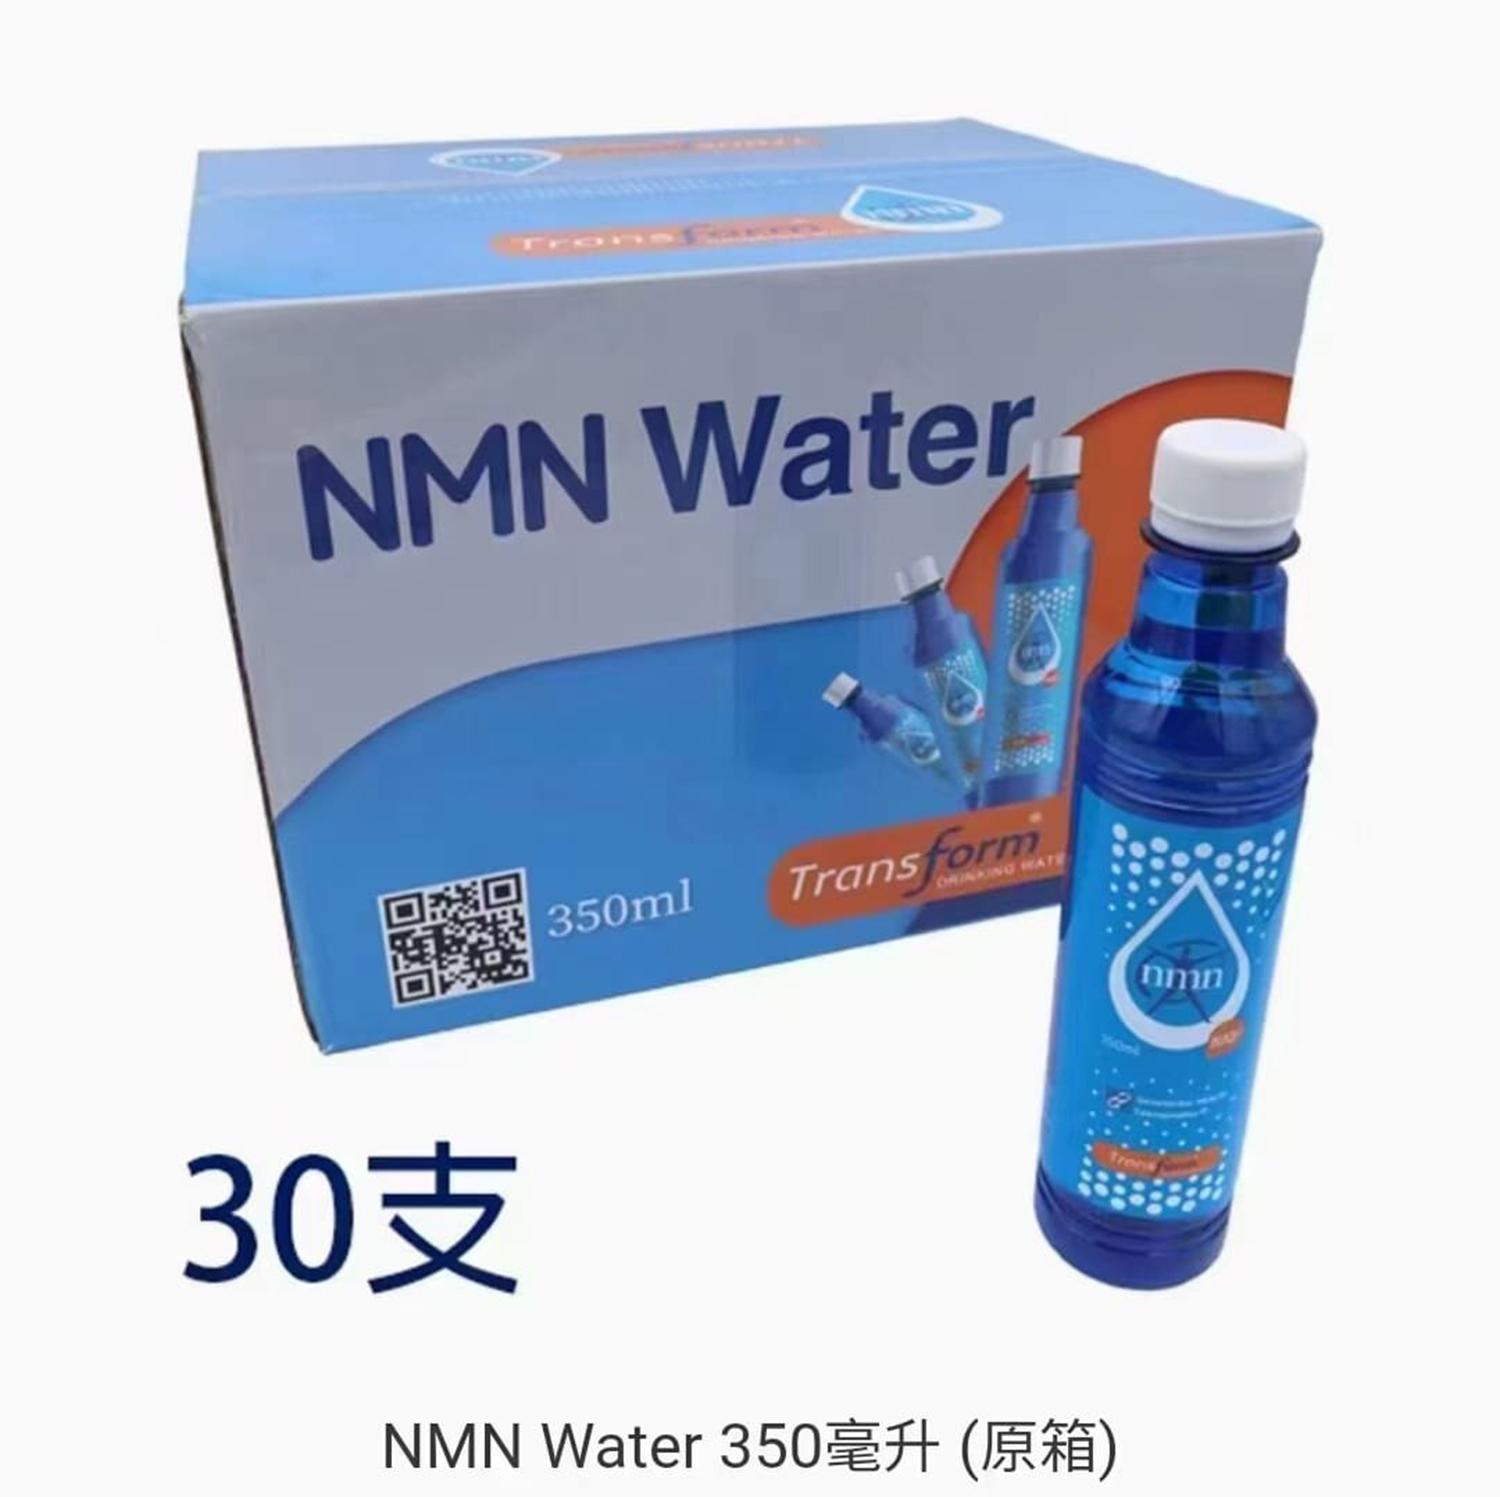 NMN抗衰老活性分子水350毫升x30支(原箱)，激活長壽蛋白延緩衰老補充液抗老化體能皮膚眼睛肝臟腦部心臟逆齡NAD+活性分子修復受損DNA年輕(NMN-WATER-350ML-30)